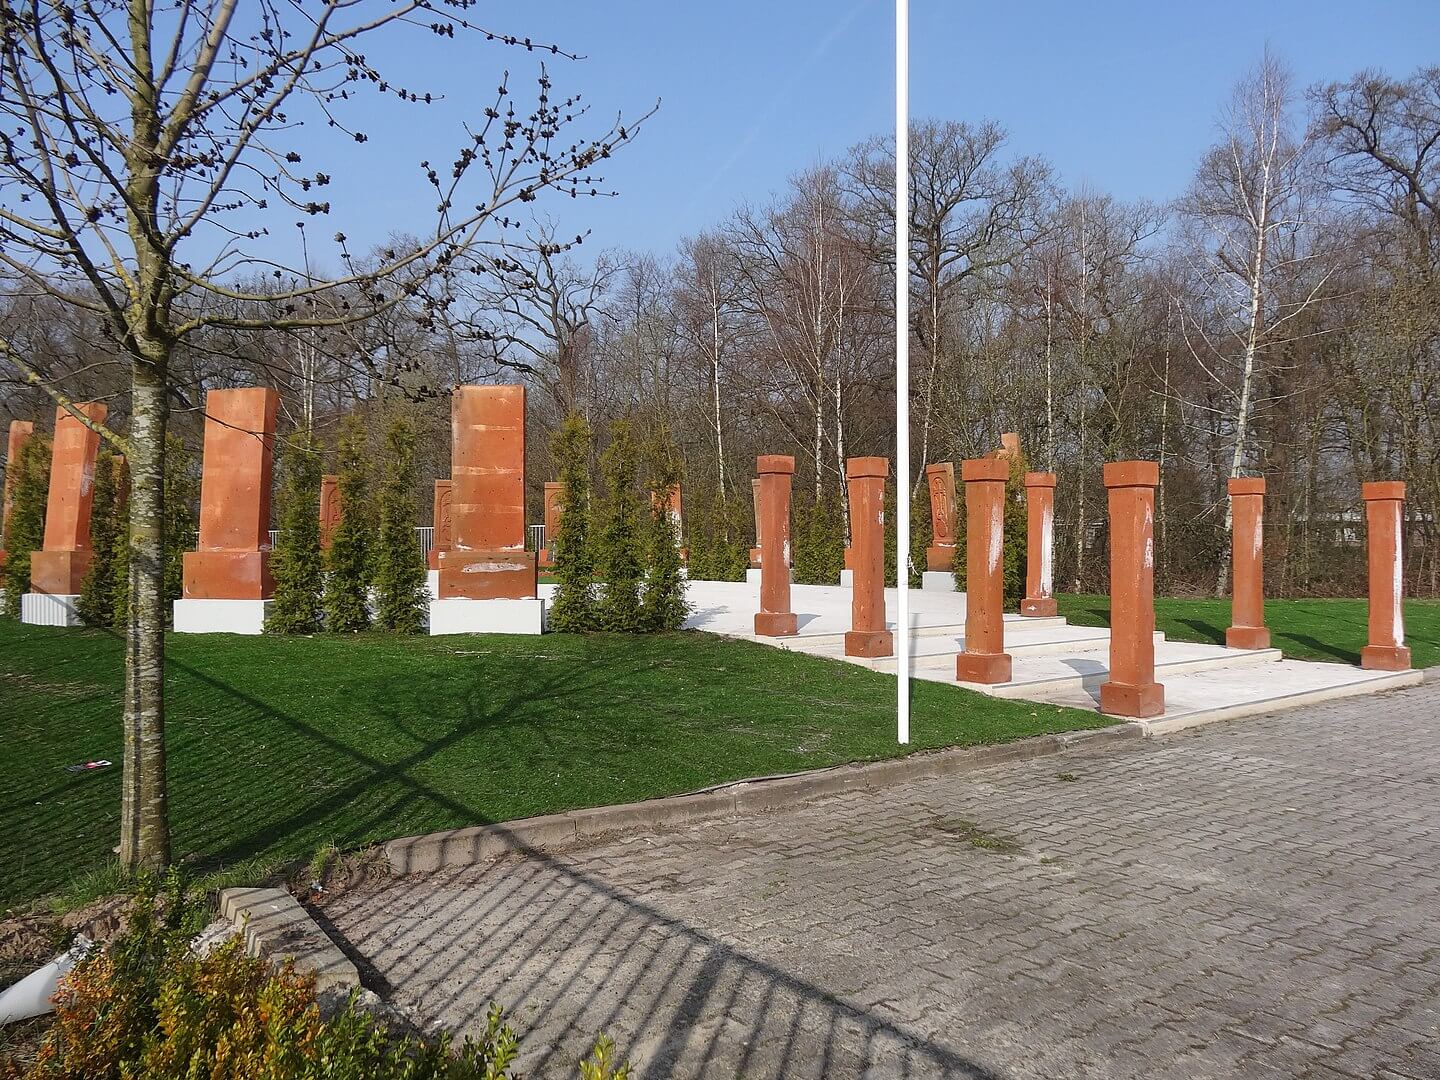 Drost-Het Genocidemonument in Almelo is een monument ter gedachtenis aan de Armeense Genocide van 1915 tot 1917 in het voormalige Ottomaanse Rijk. Het monument is opgericht op 24 april 2014. Wikimediacommons